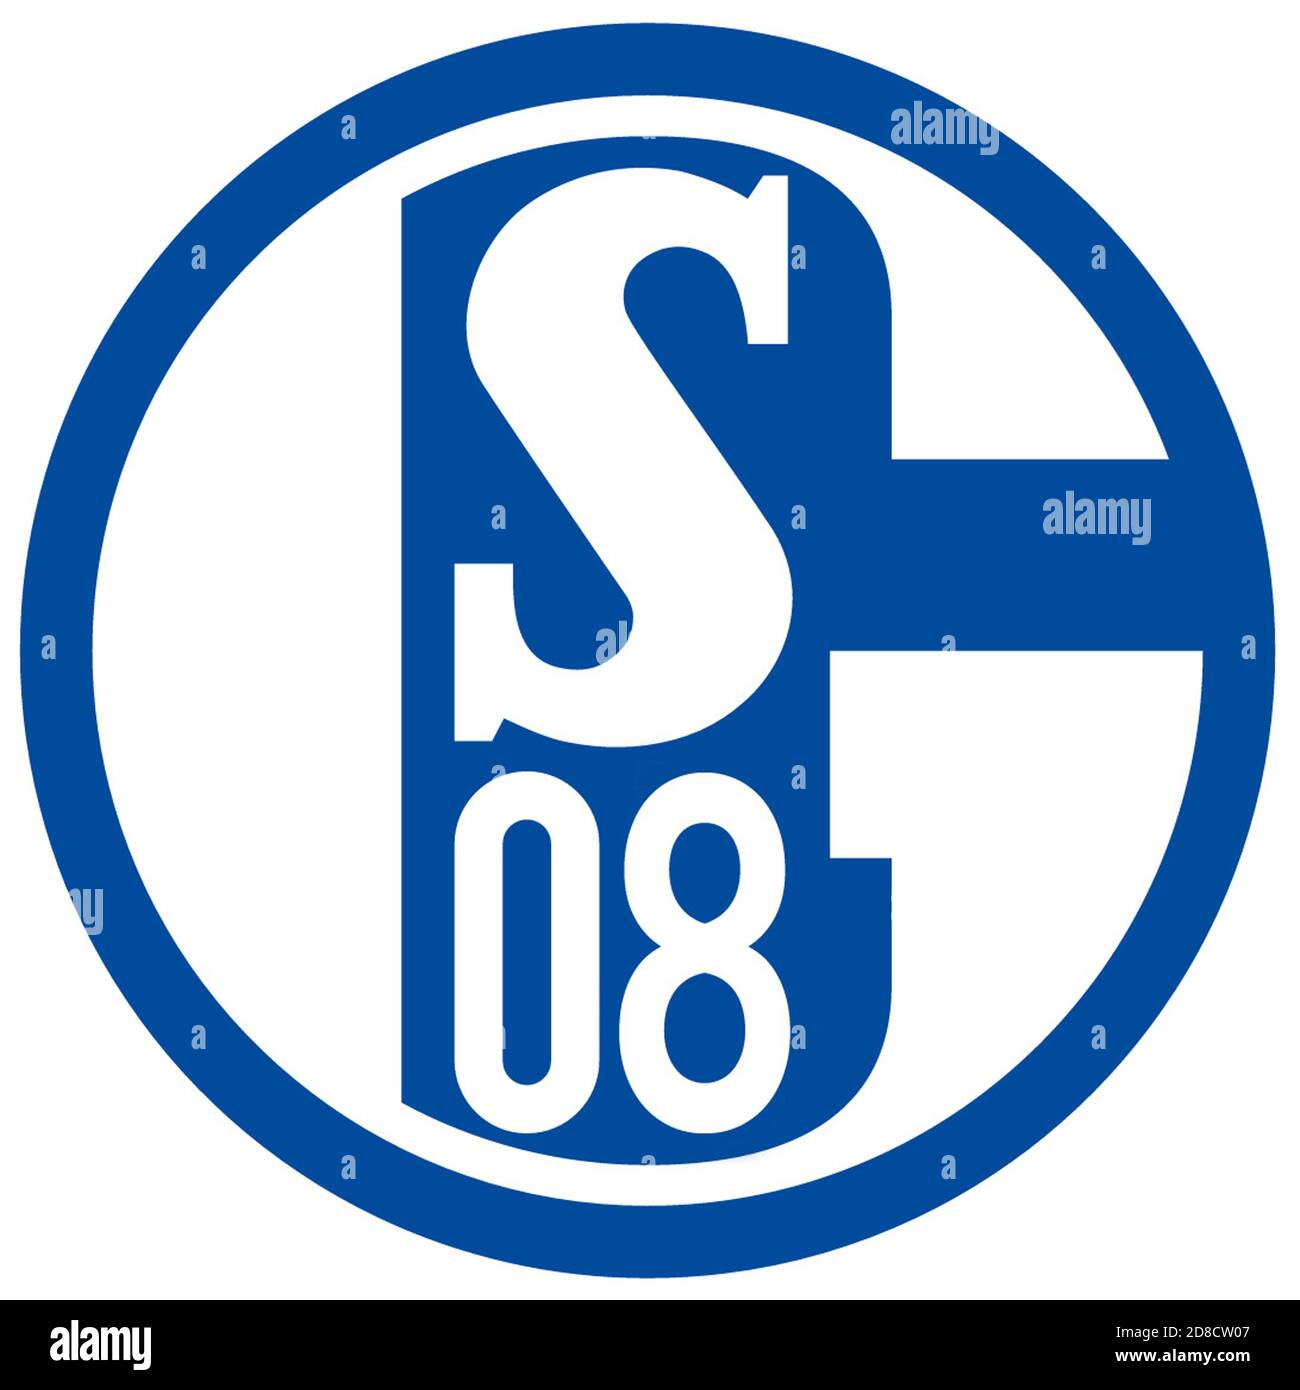 Modifiziertes Vereinslogo, FC Schalke 08, nach der 0:8-Niederlage gegen den FC Bayern München am 18.09.2020 zu Beginn der 58. Bundesliga-Saison, Stockfoto